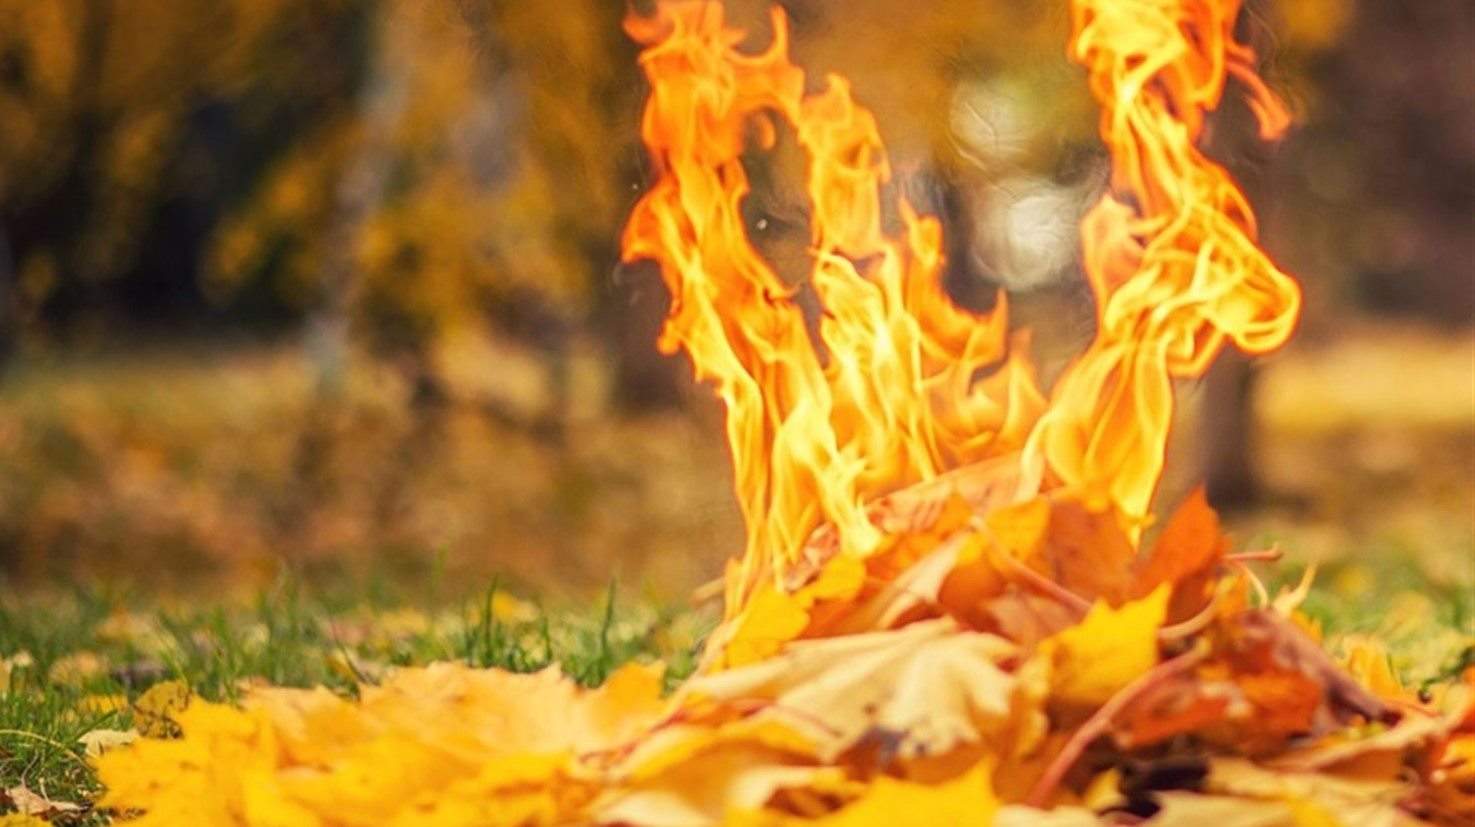 Папір, компост і декор: що робити з опалим листям, якщо спалювати не можна